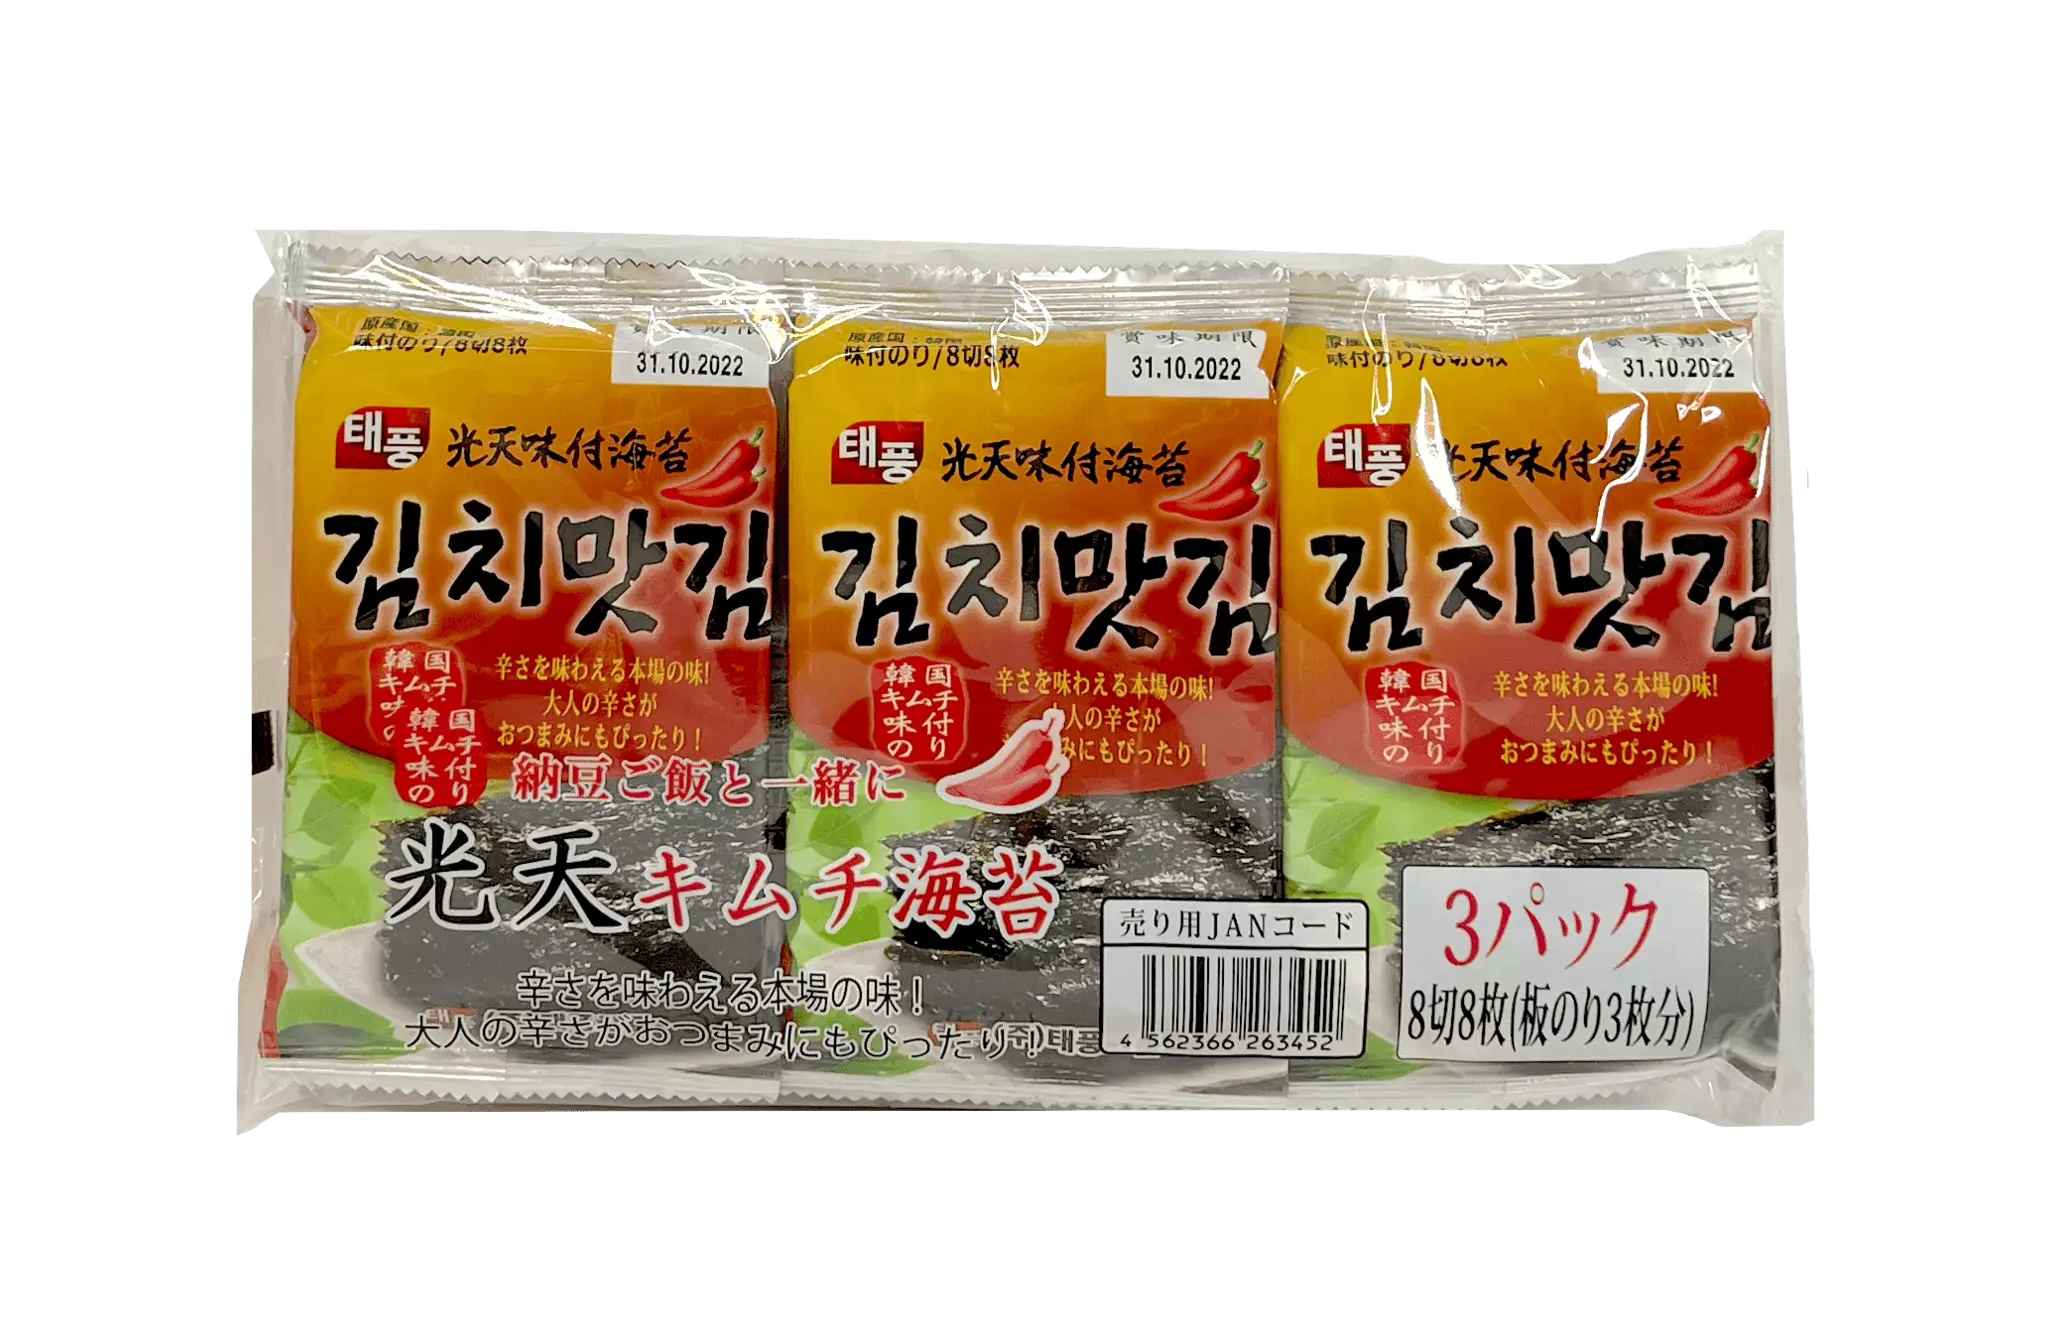 香脆海苔片 泡菜风味 (4gx3pcs) NH 韩国